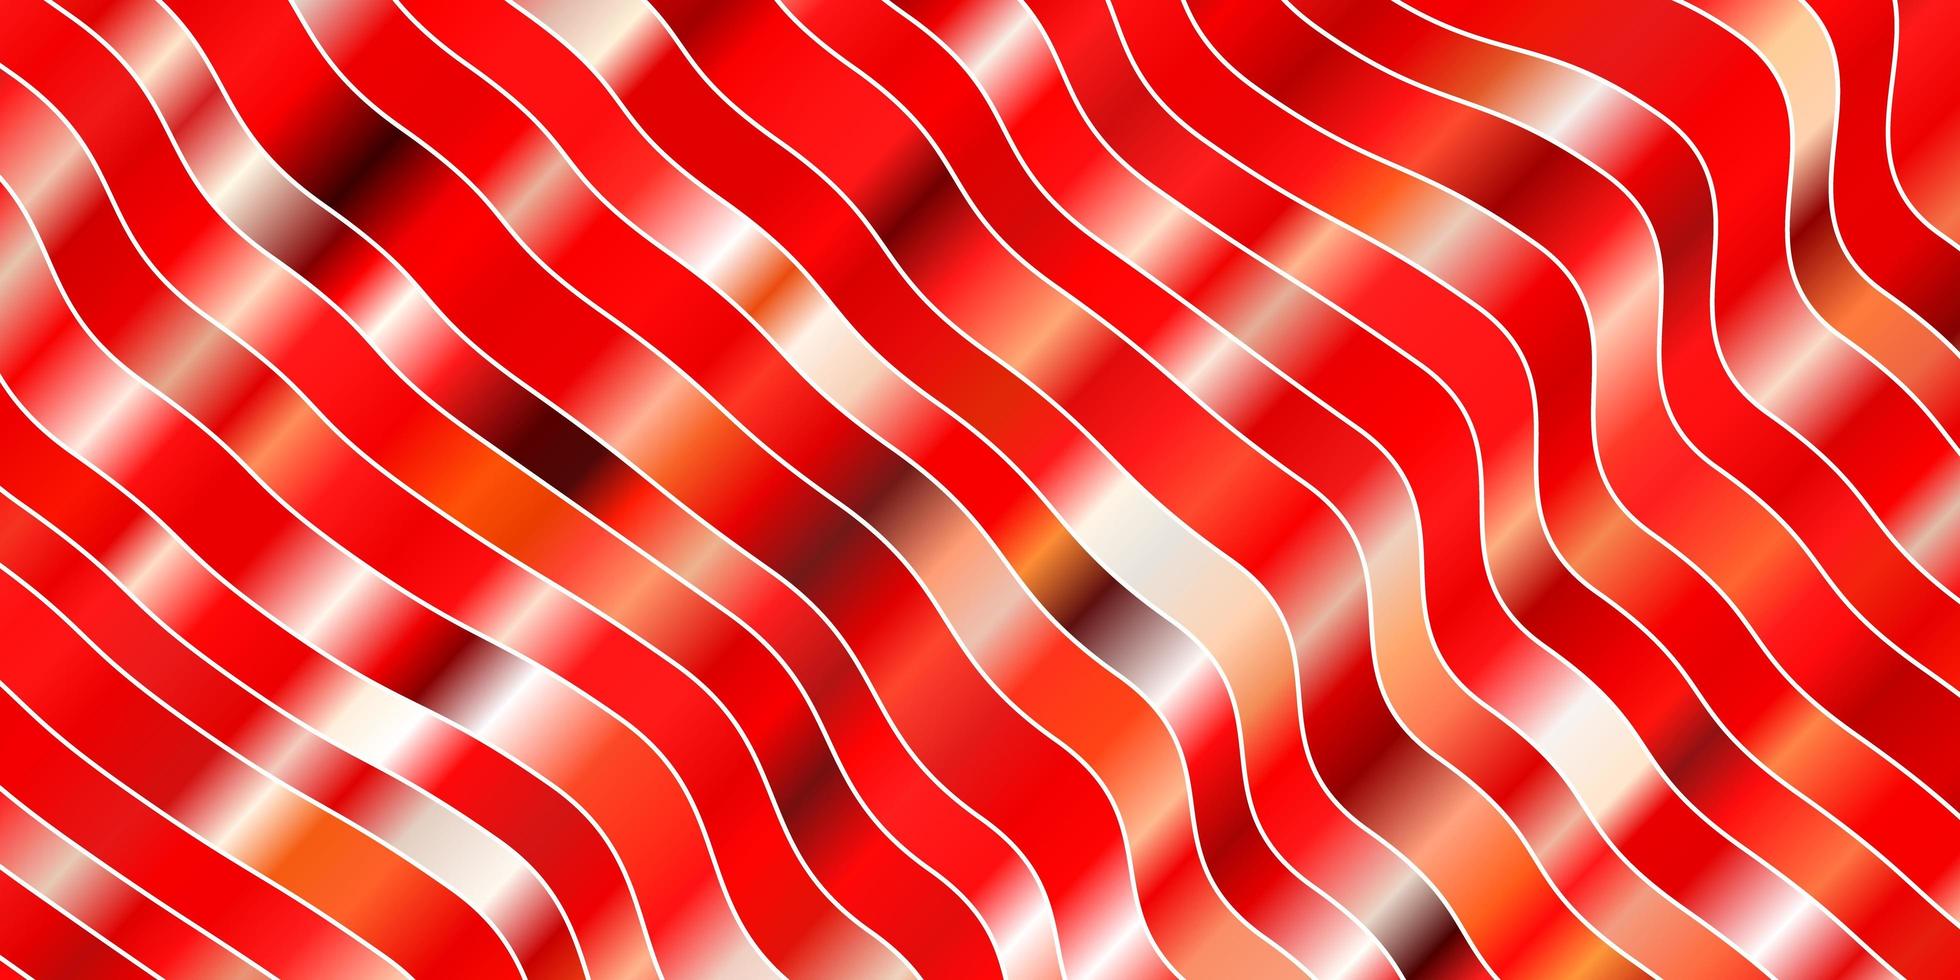 motif vectoriel rouge clair avec des lignes